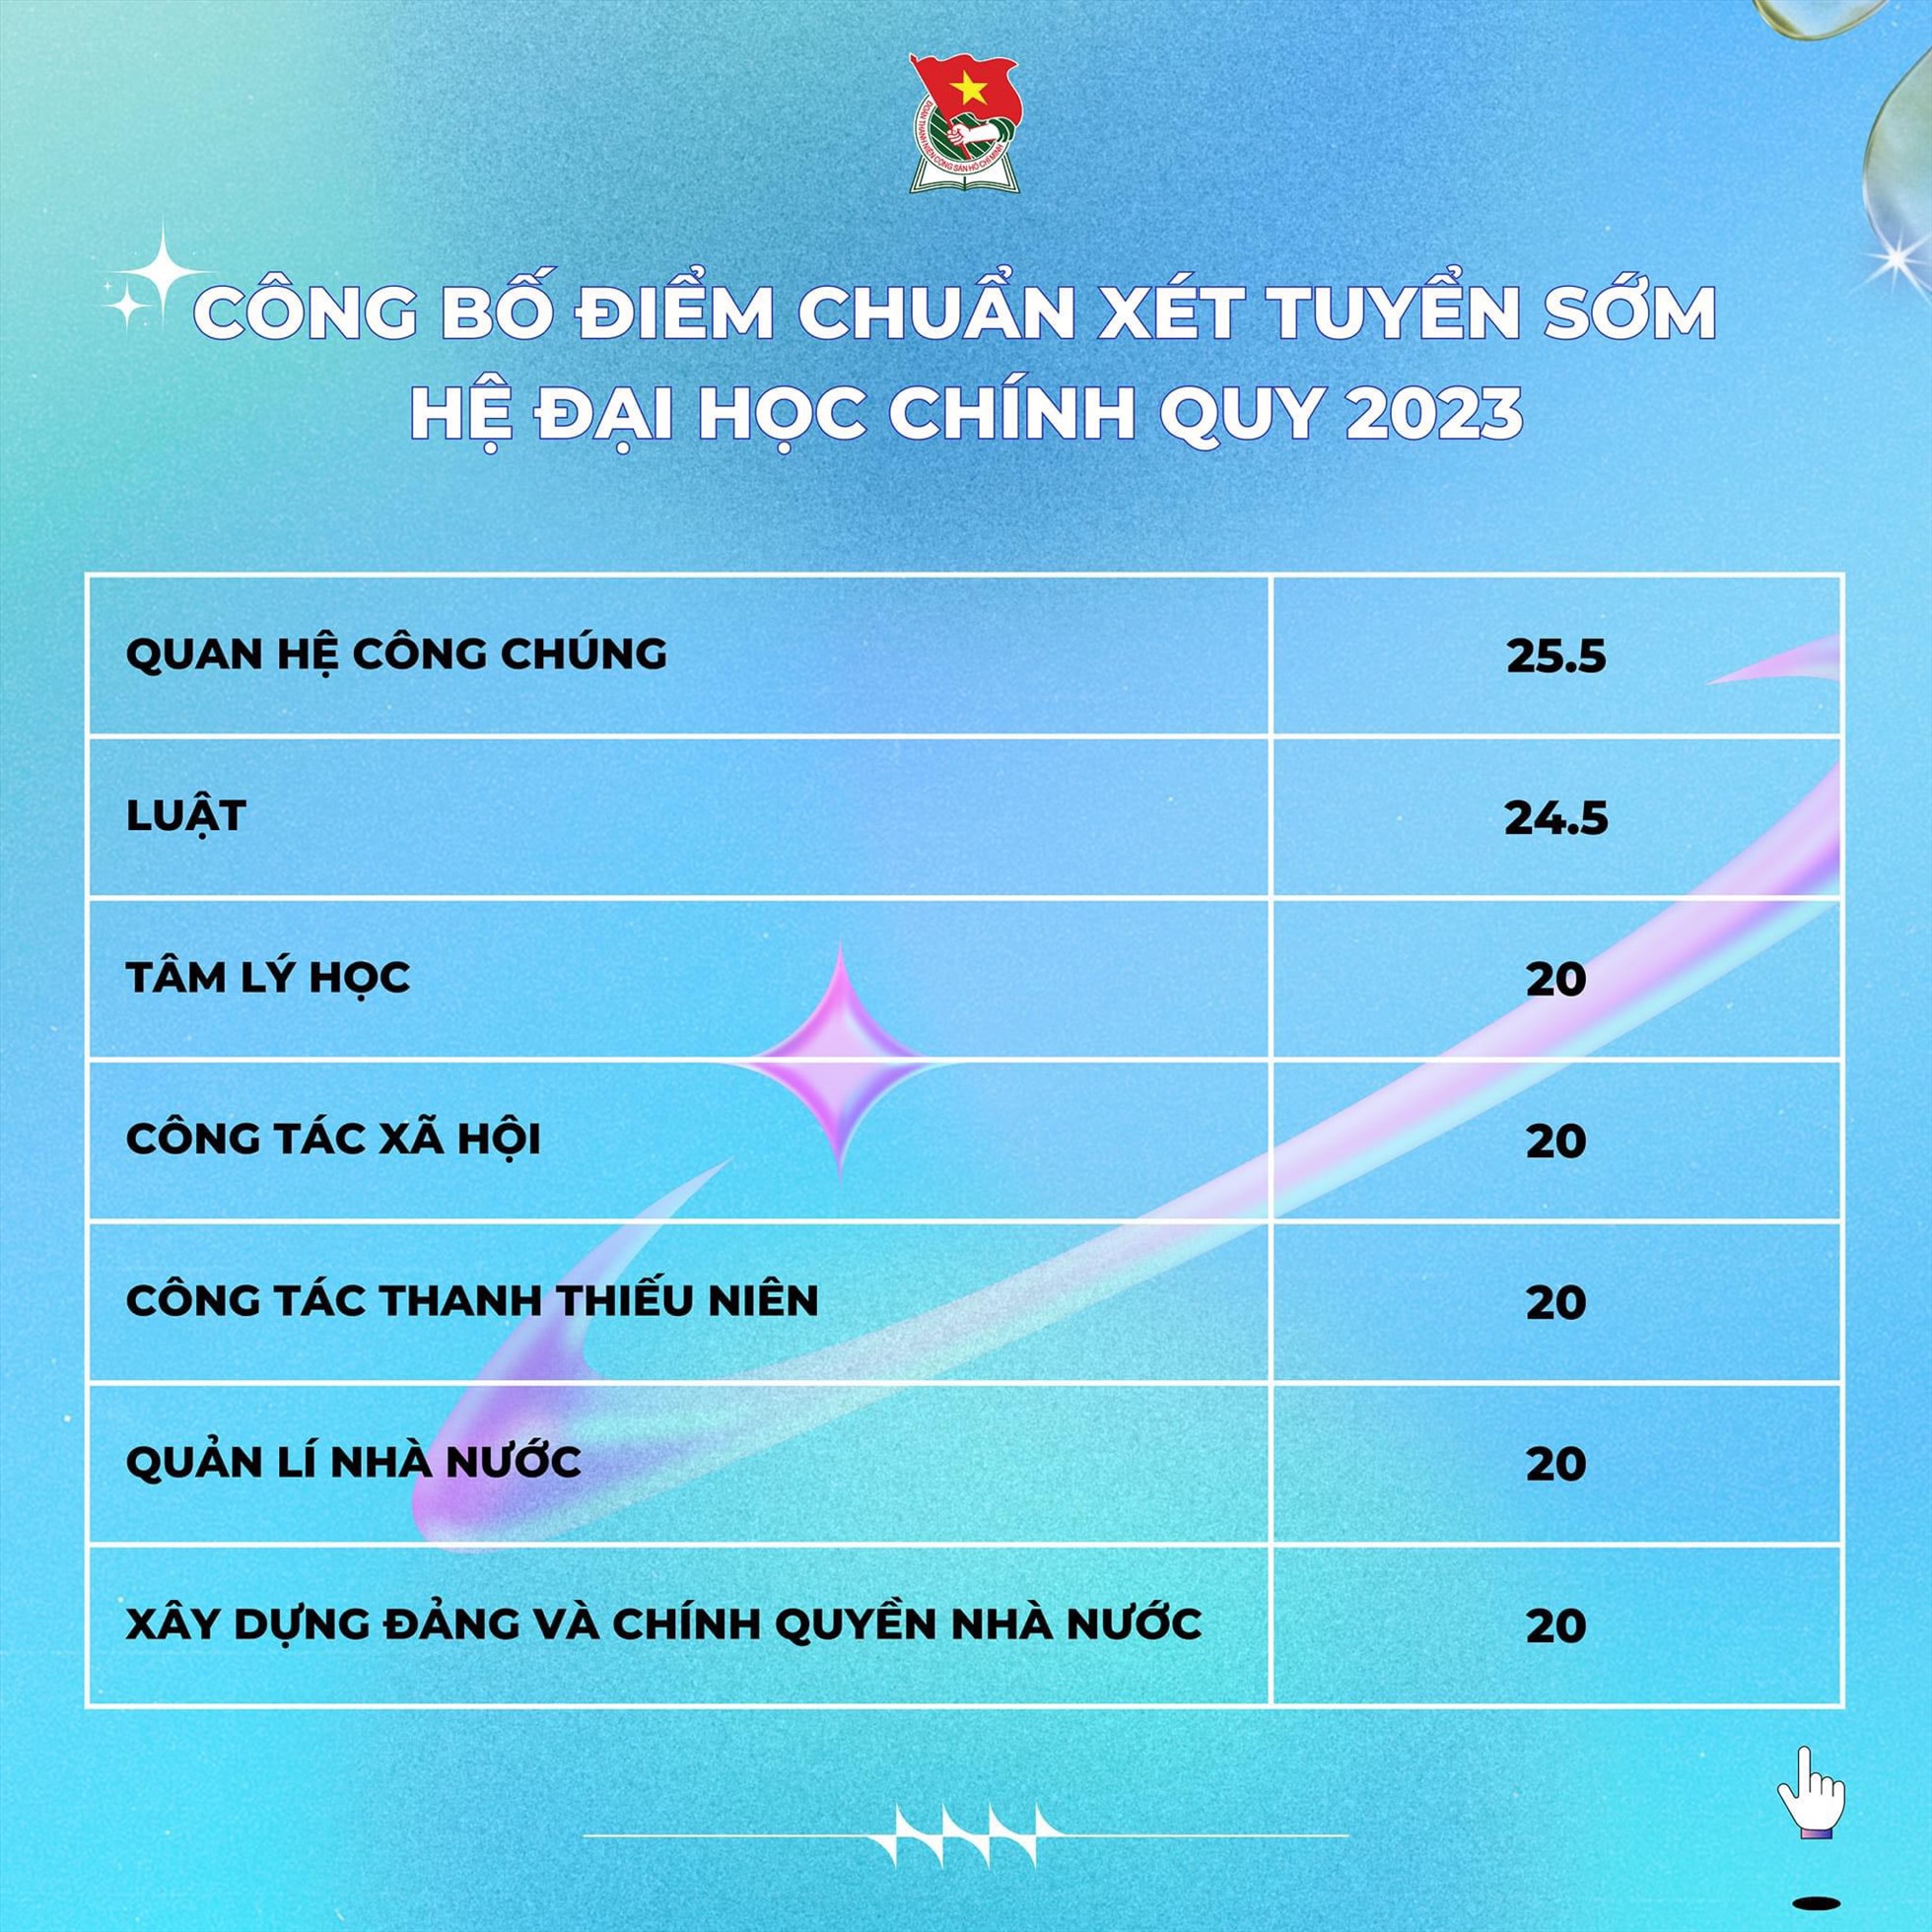 Điểm chuẩn học bạ Học viện Thanh thiếu niên Việt Nam năm 2023.